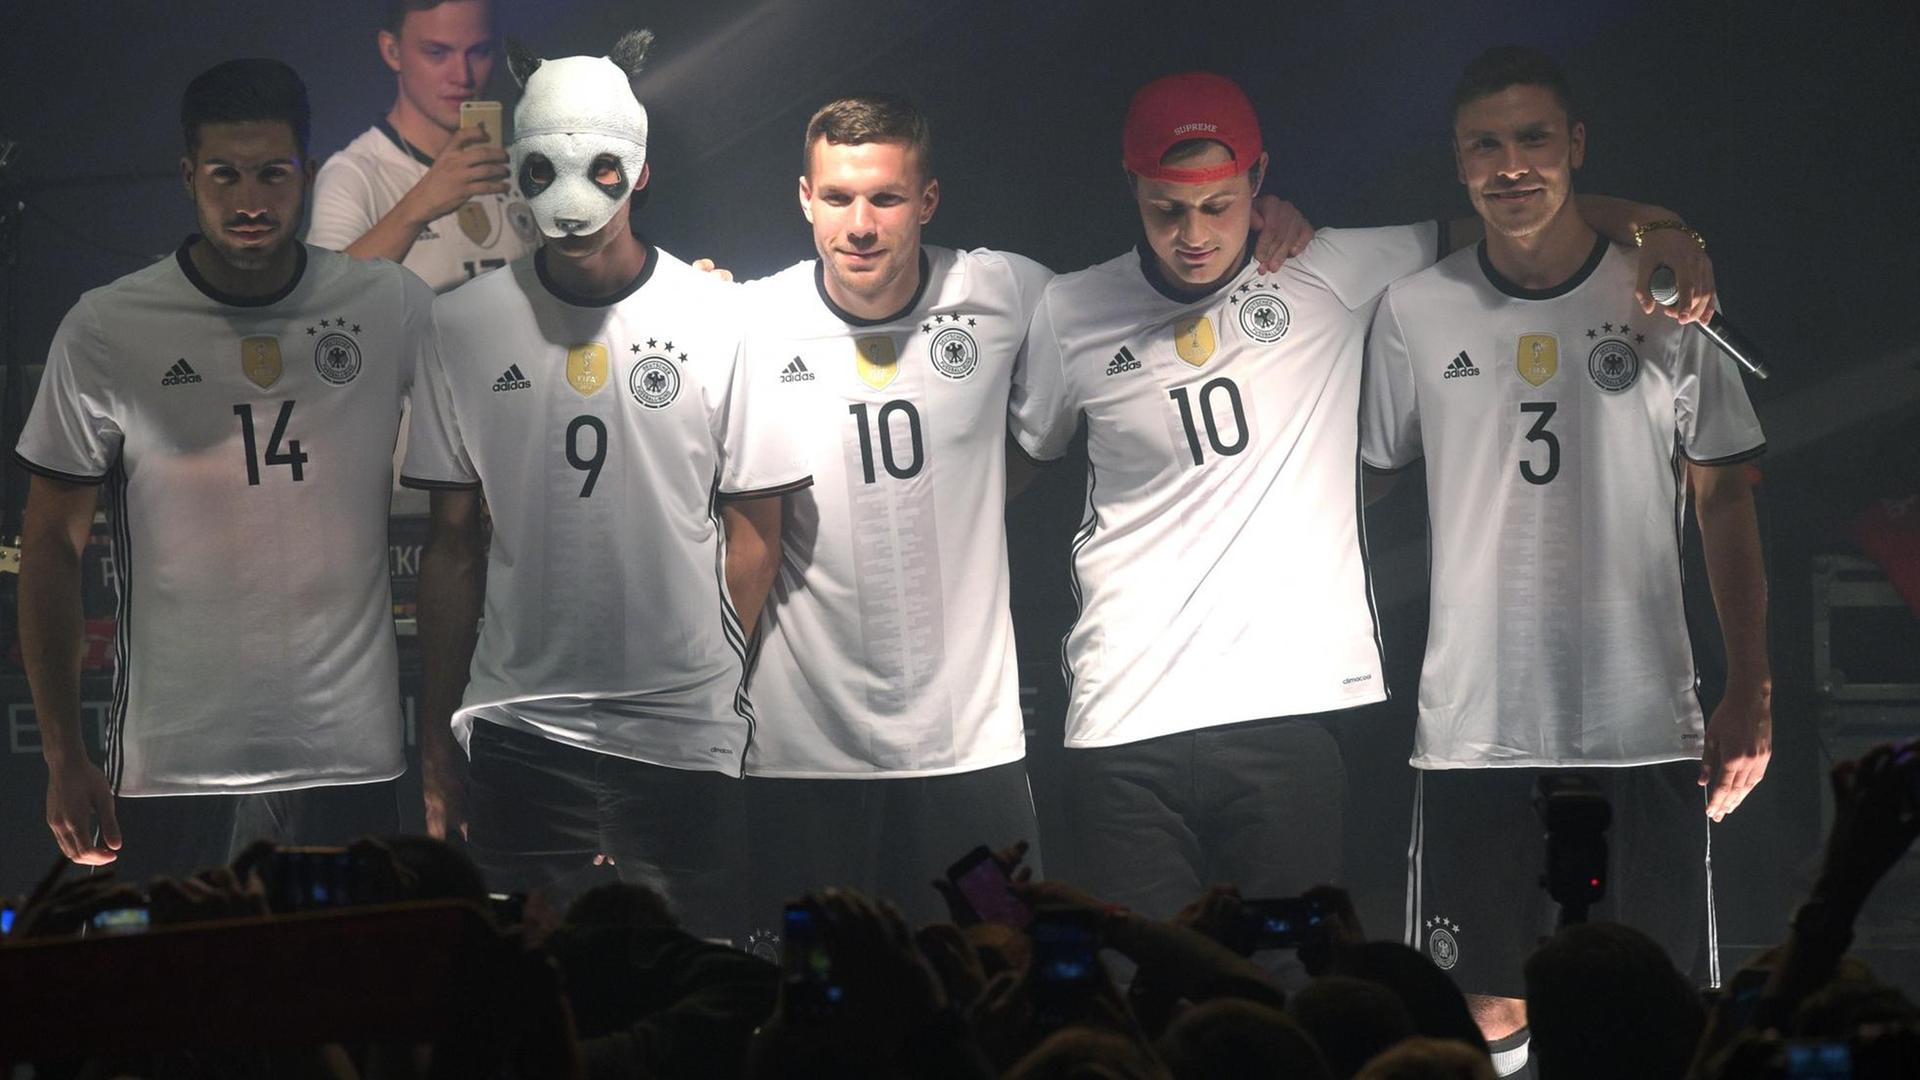 Die Fußballnationalspieler Emre Can (l), Lukas Podolski (M) und Jonas Hector (R) posieren mit Rapper Cro (2.v.l.) am 09.11.2015 in Berlin bei der Trikot-Präsentation des DFB-Ausrüsters Adidas im neuen Trikots der deutschen Nationalmannschaft für die EM 2016 in Frankreich.